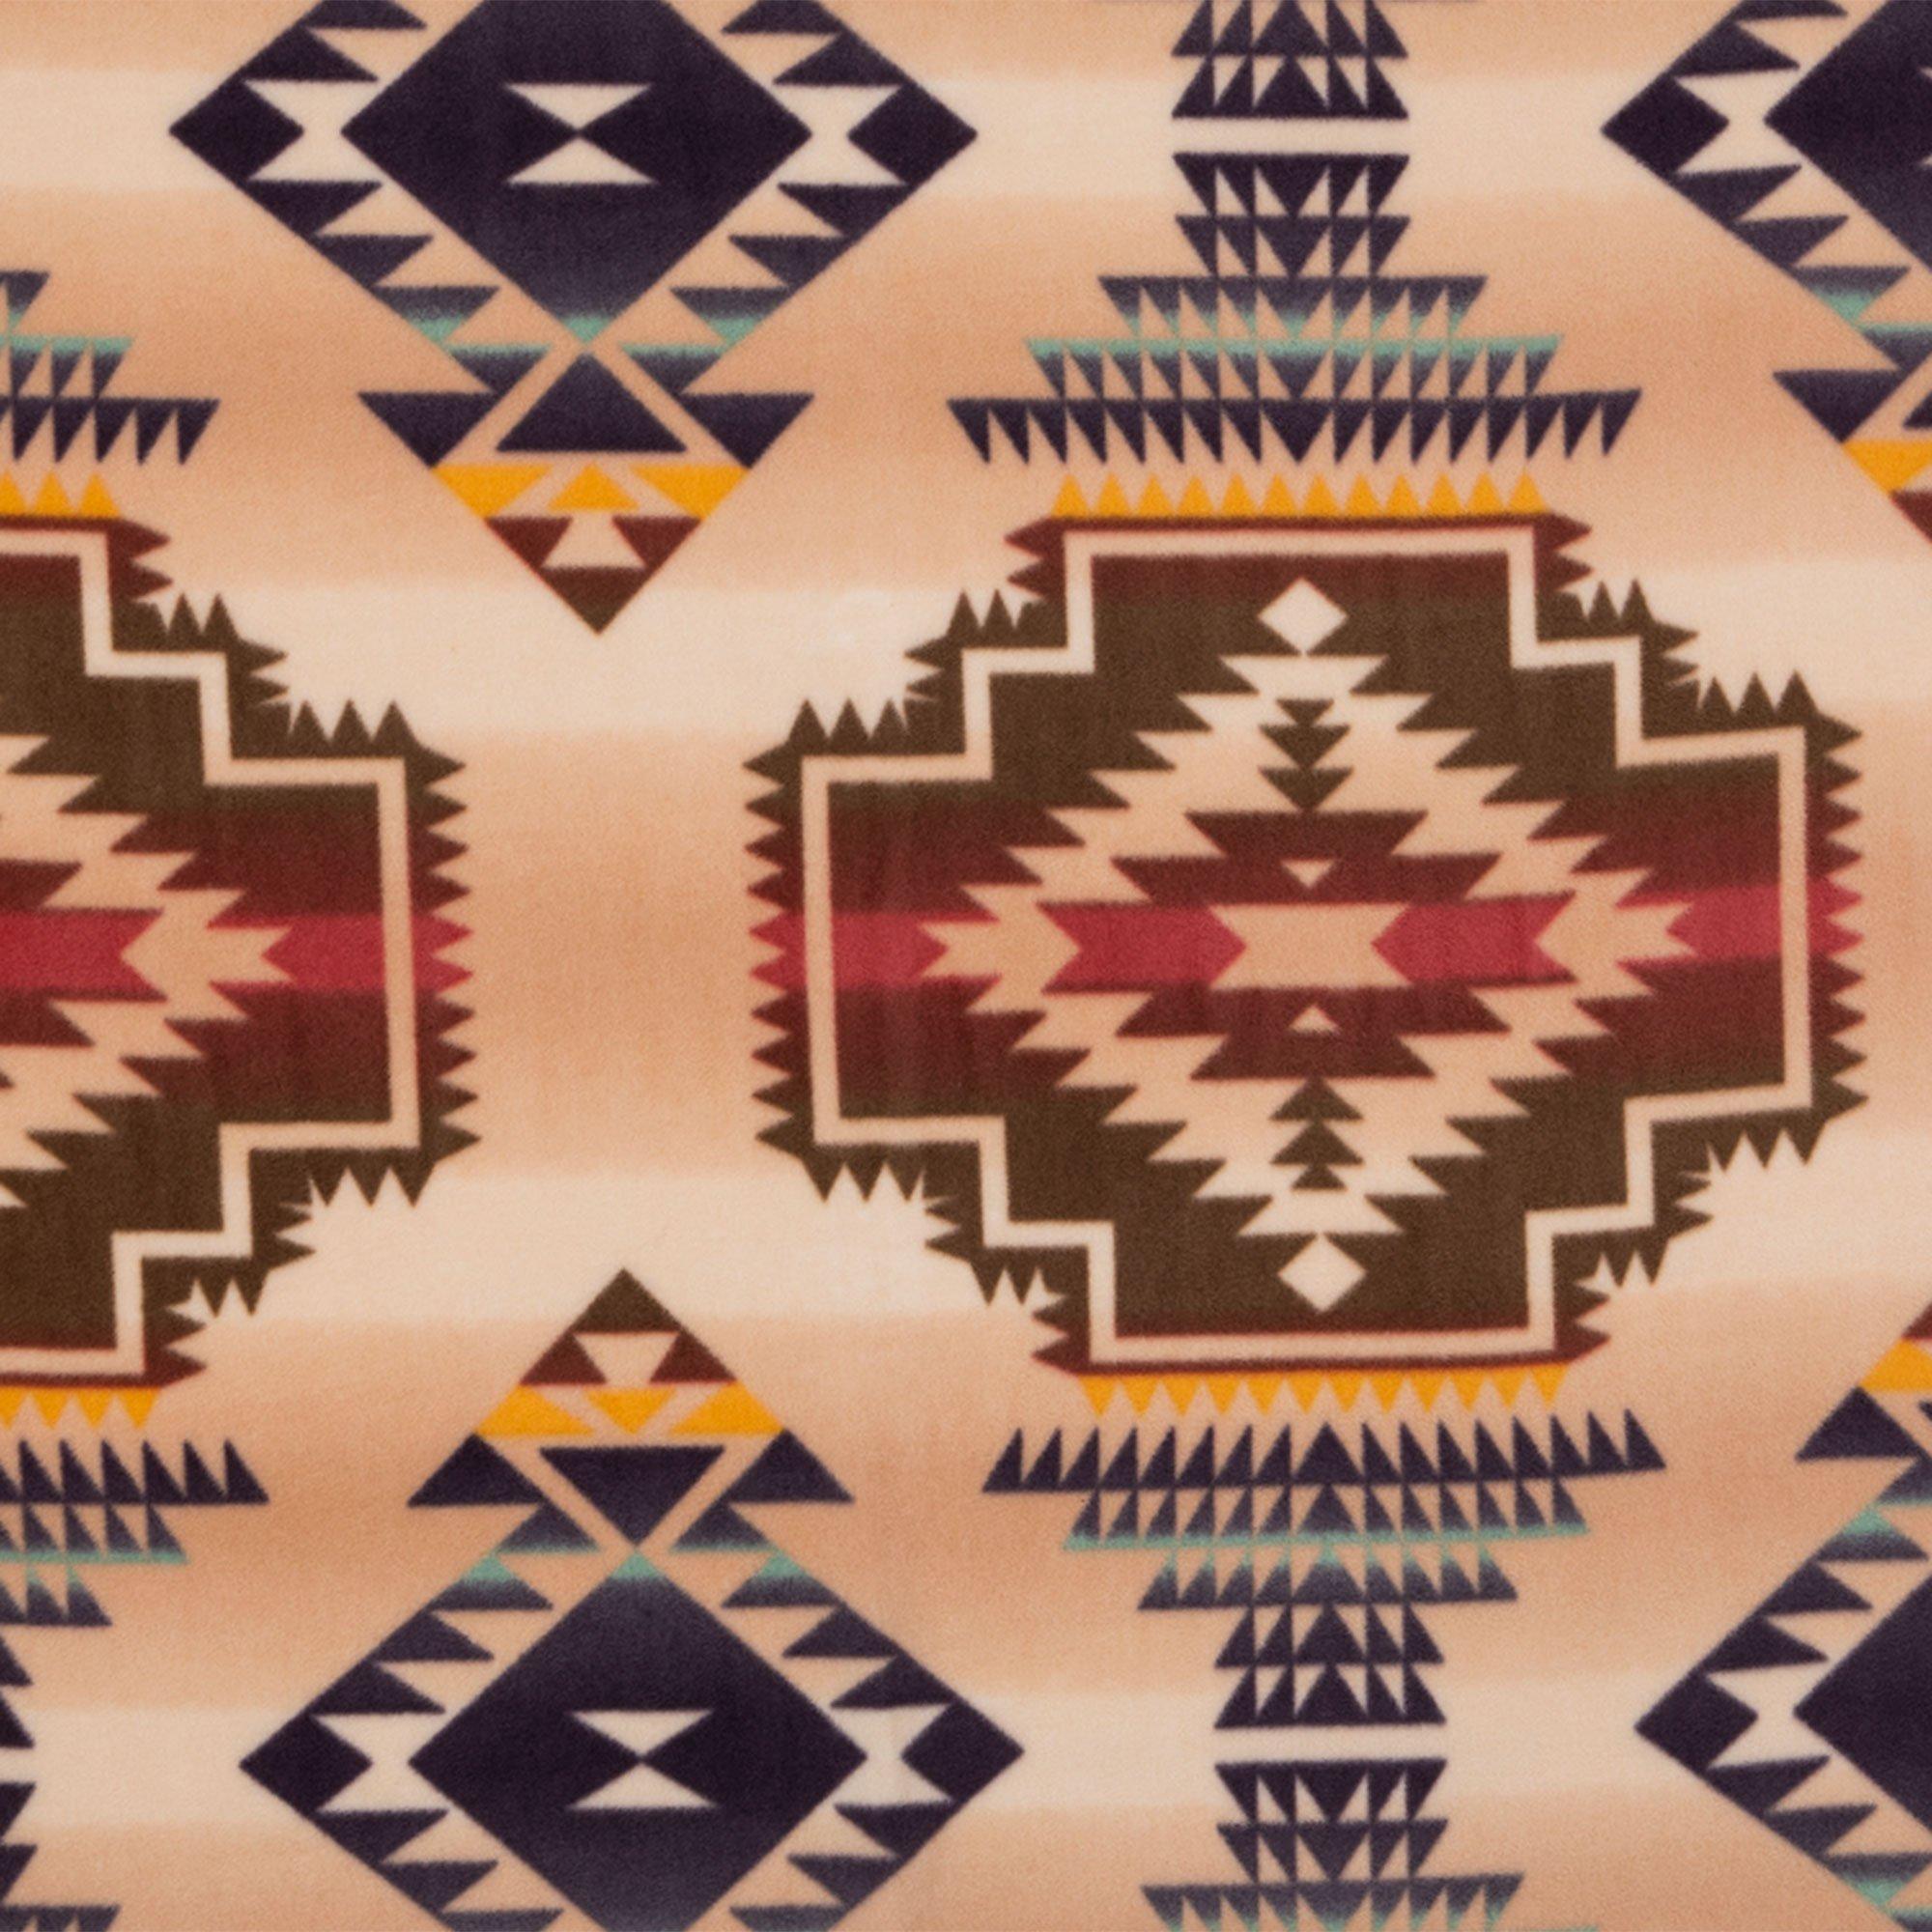 Aztec Print Fleece Fabric Blanket Kit -Perfect for Tie Blanket - 2 yds x 60